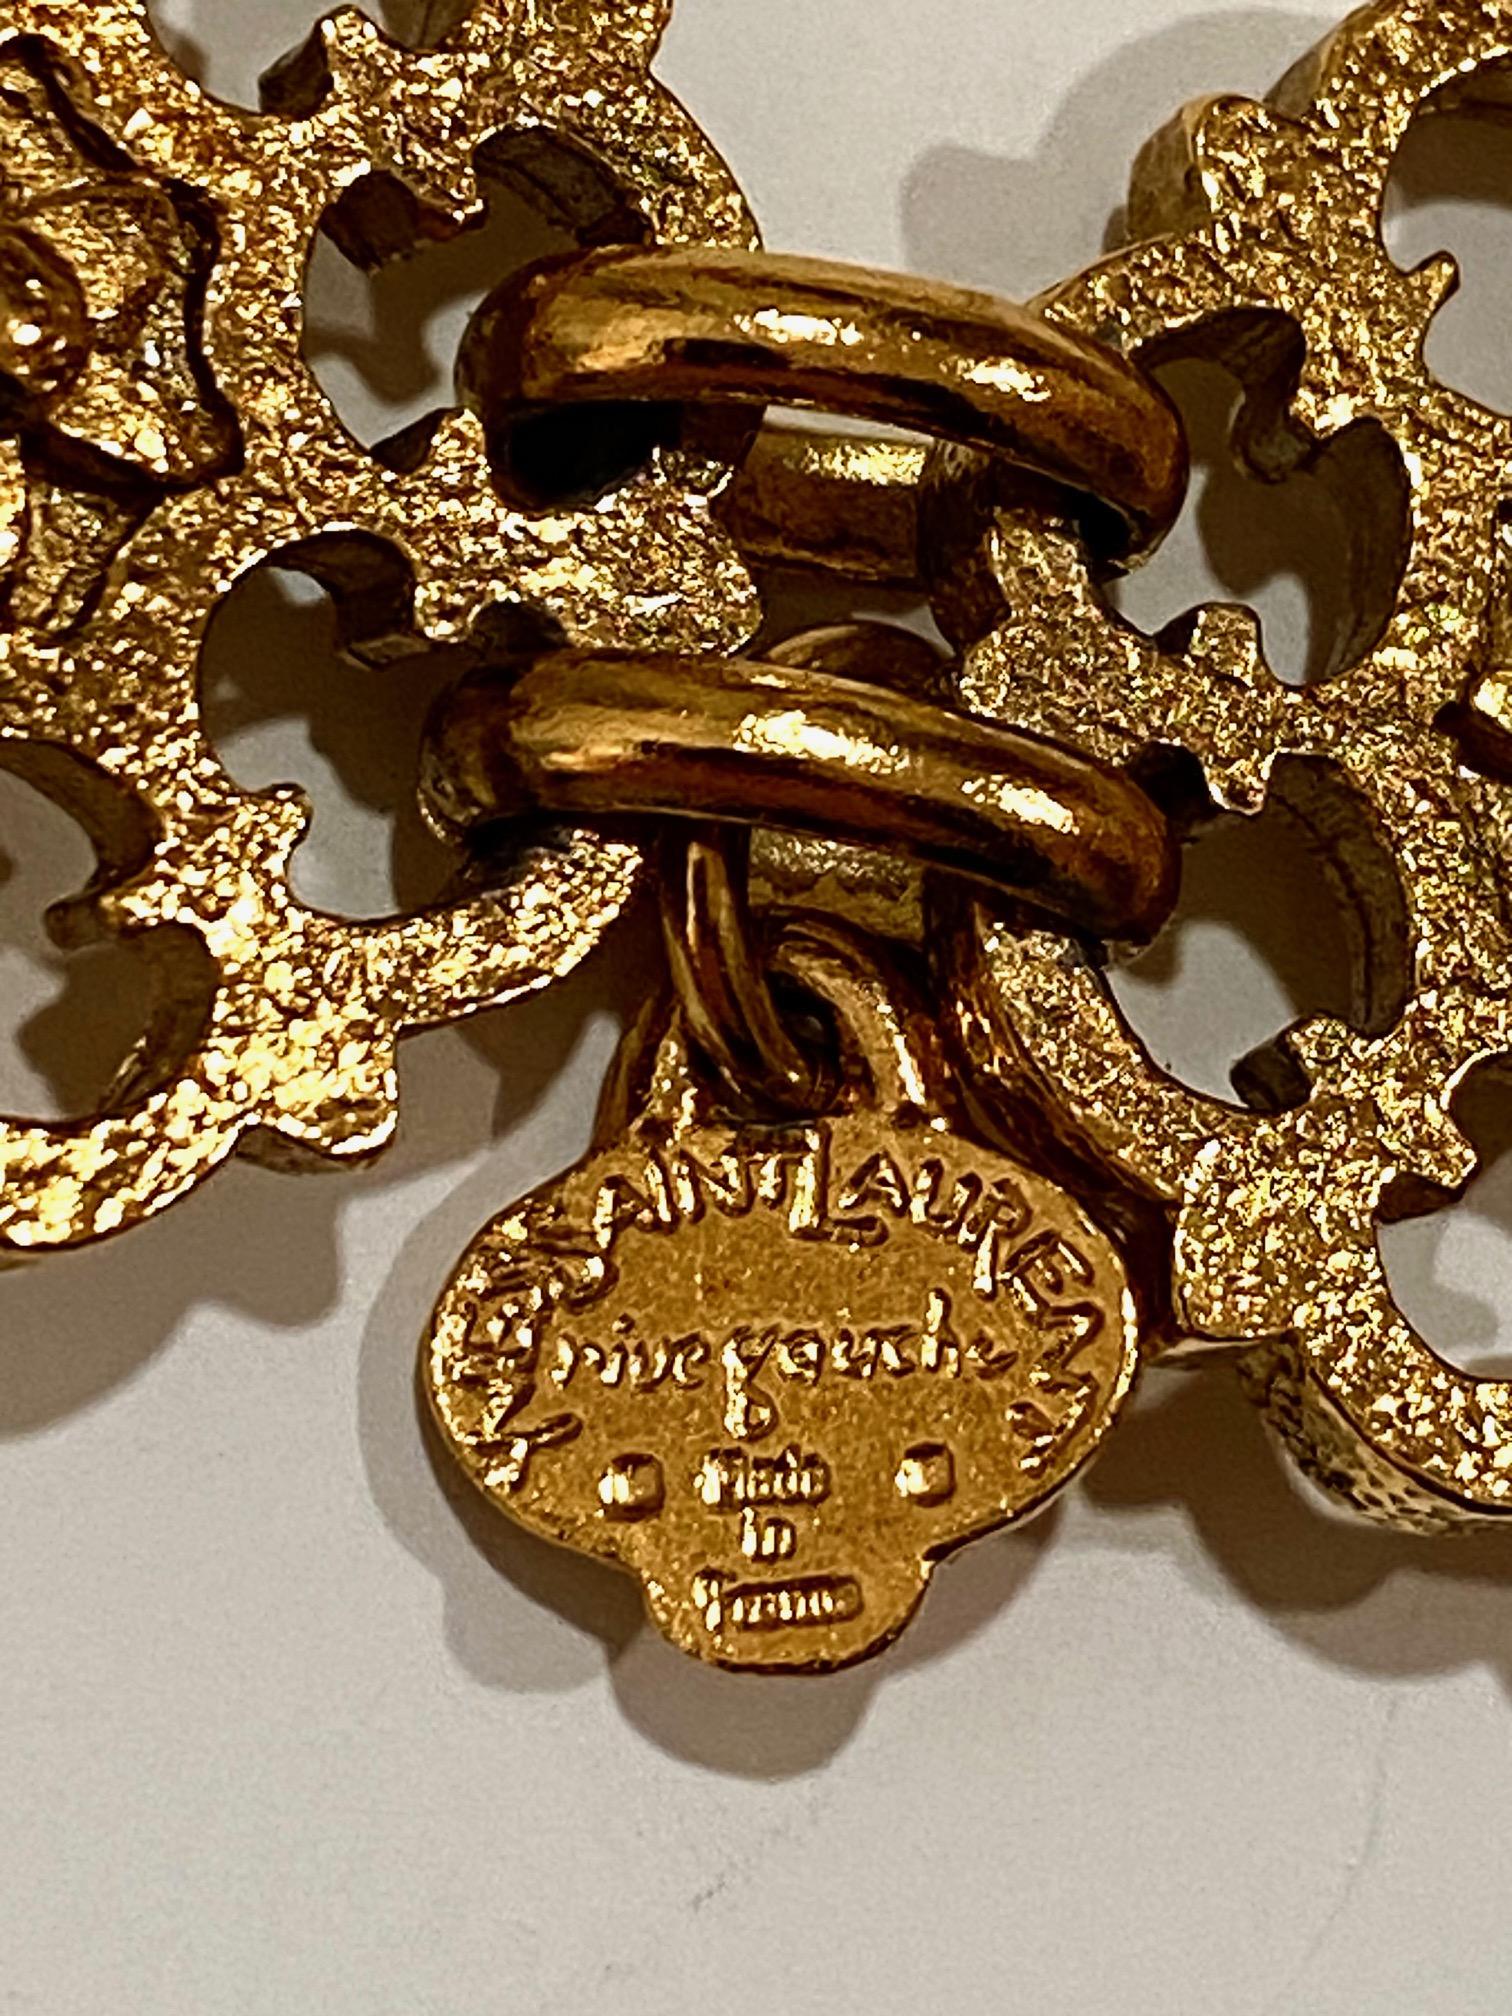 Yves Saint Laurent, Rive Gauche, 1980s Gold Belt / Necklace For Sale 3